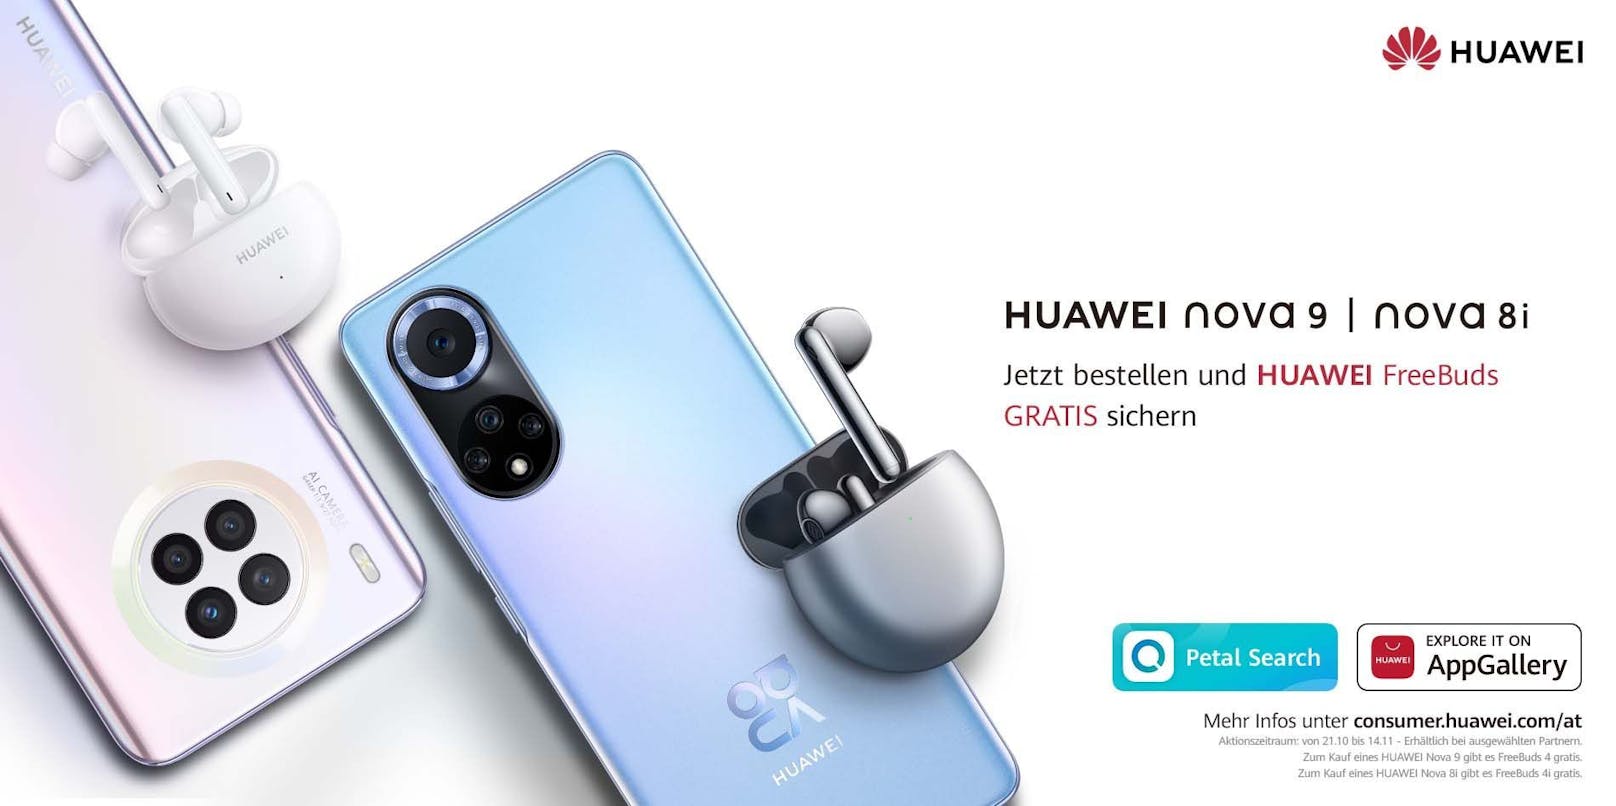 Wer bis 28. November das neue Huawei nova 9 kauft, bekommt die Huawei FreeBuds 4 Kopfhörer bei teilnehmenden Handelspartnern kostenlos dazu!